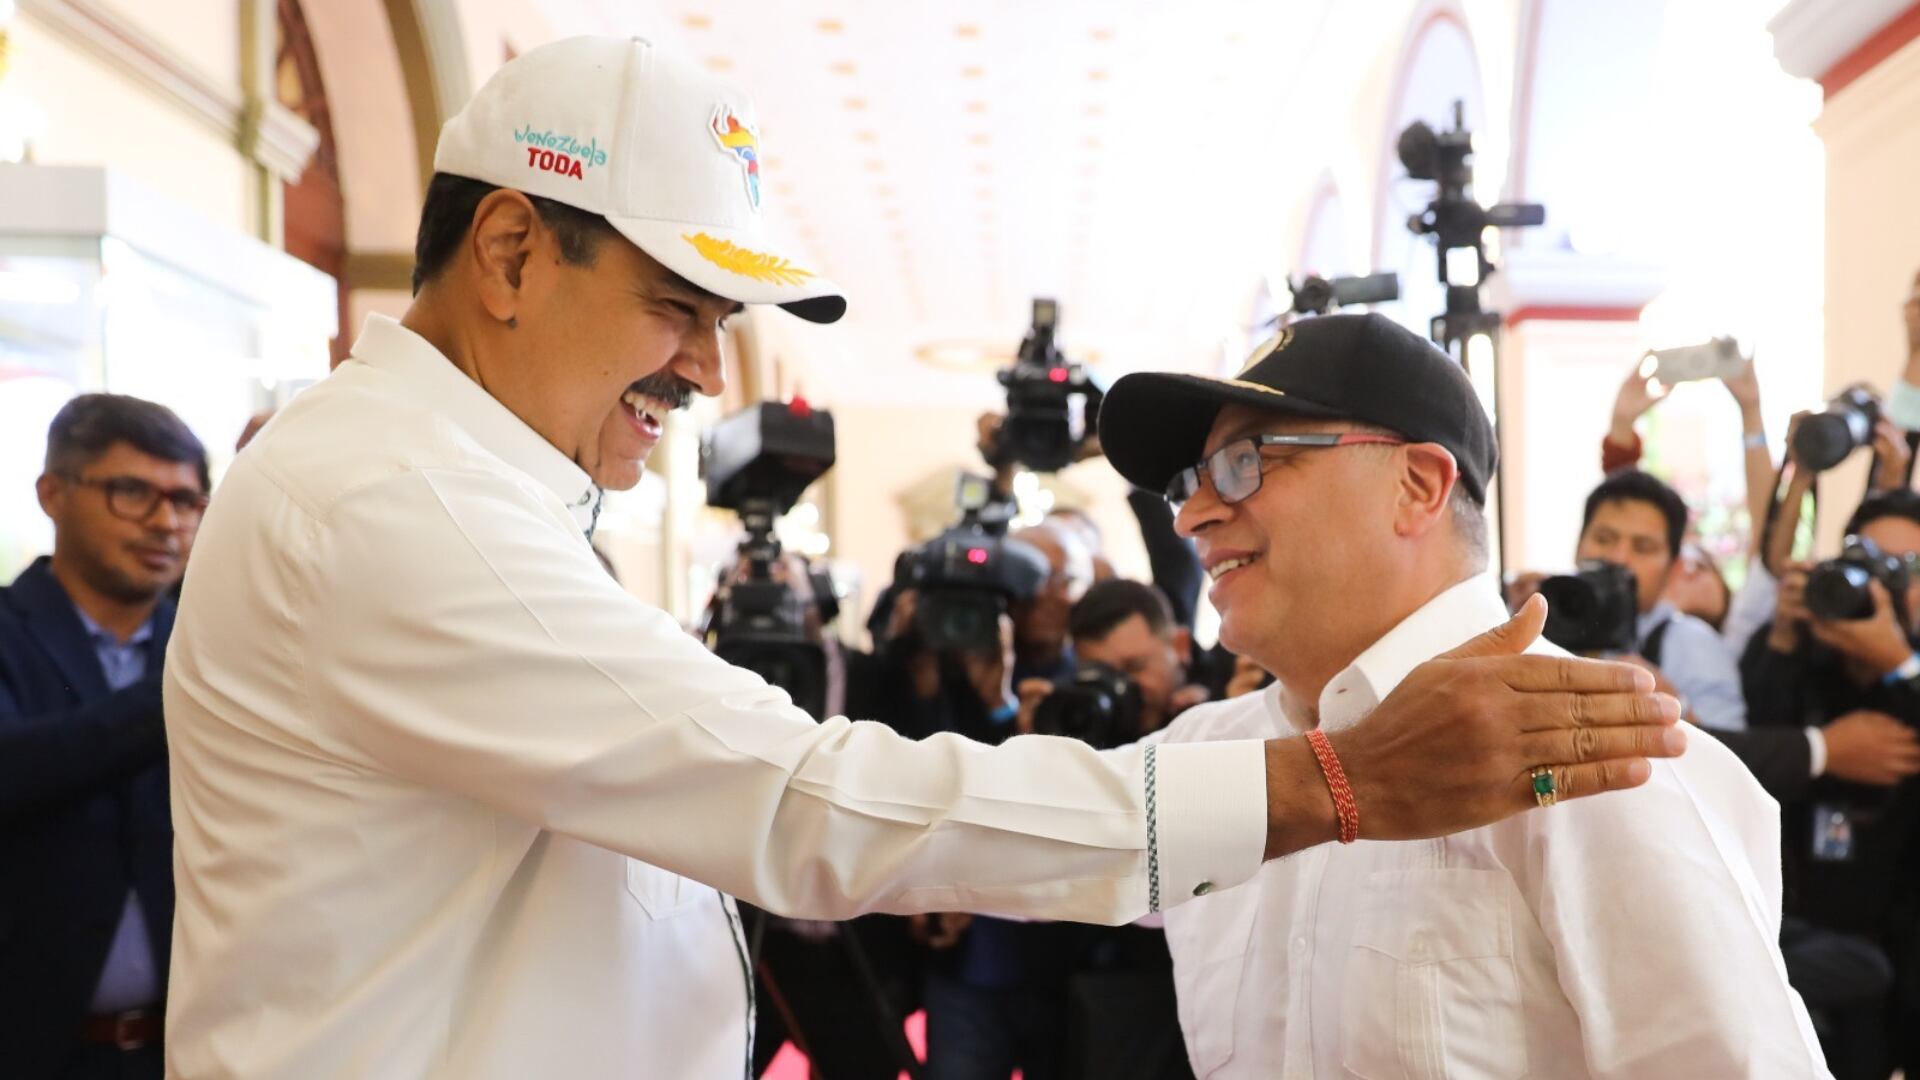 Los líderes políticos de Venezuela y Colombia, Nicolás Maduro y Gustavo Petro, respectivamente, se encontraron en Caracas para abordar una serie de desafíos que han afectado las relaciones bilaterales entre ambas naciones - crédito Presidencia de Venezuela